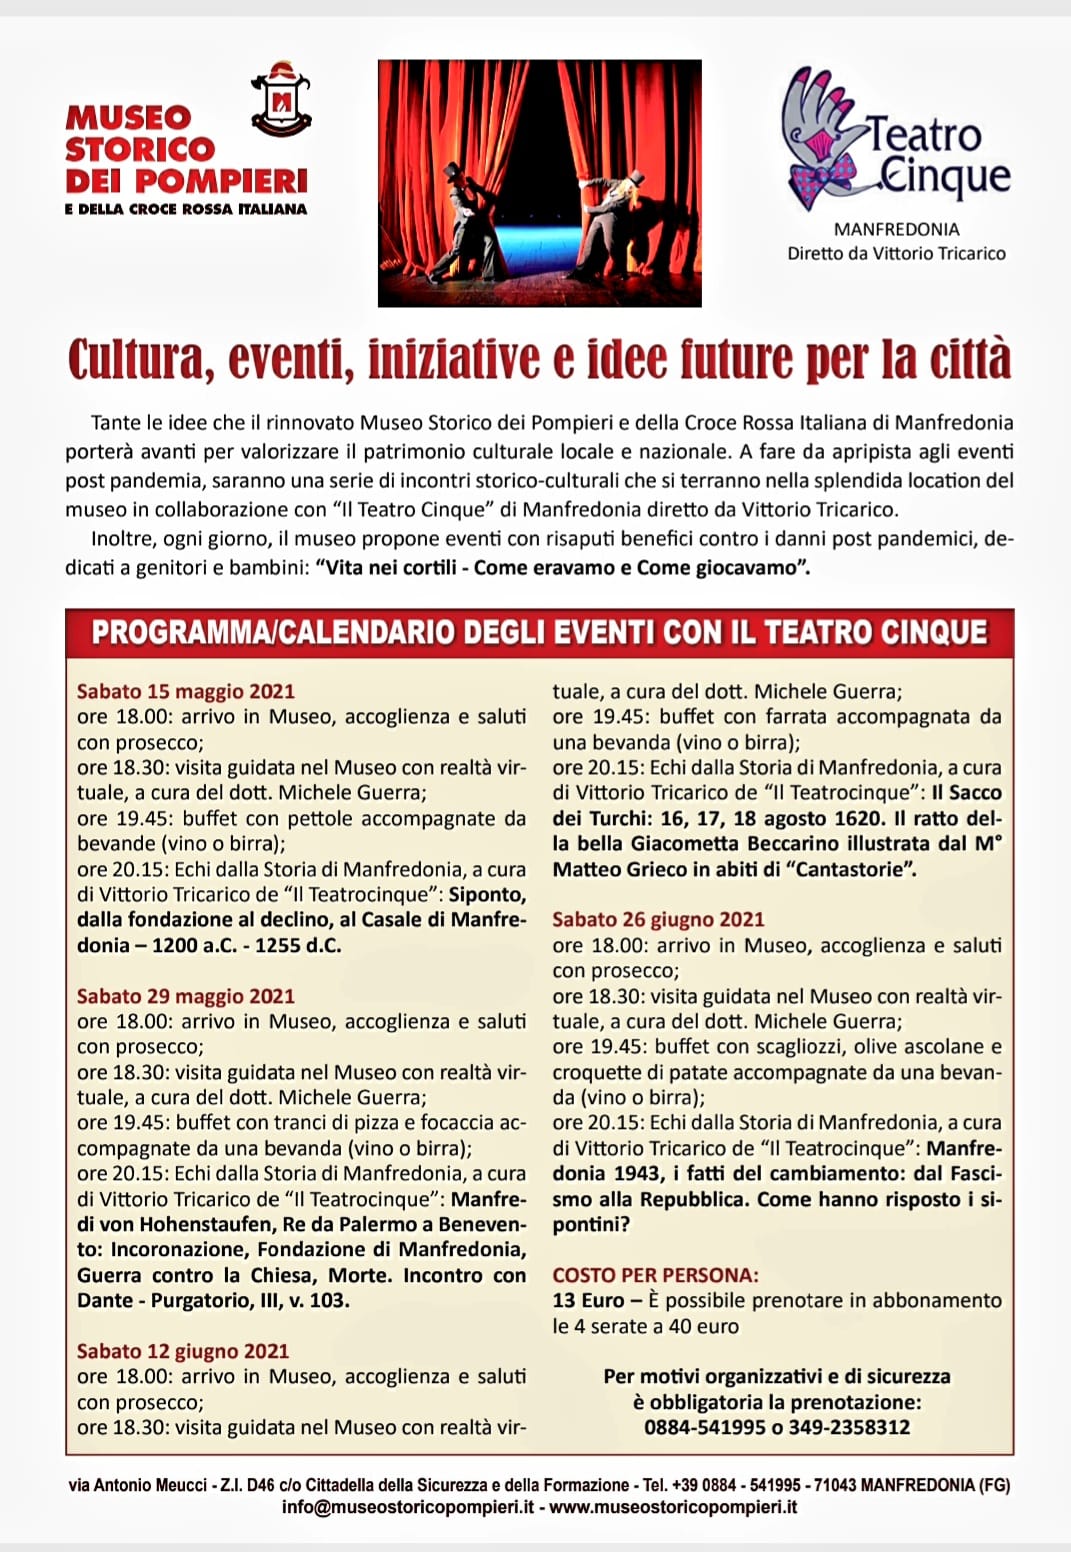 Cultura, eventi, iniziative a cura del Museo Storico dei Pompieri e della Croce Rossa Italiana di Manfredonia.